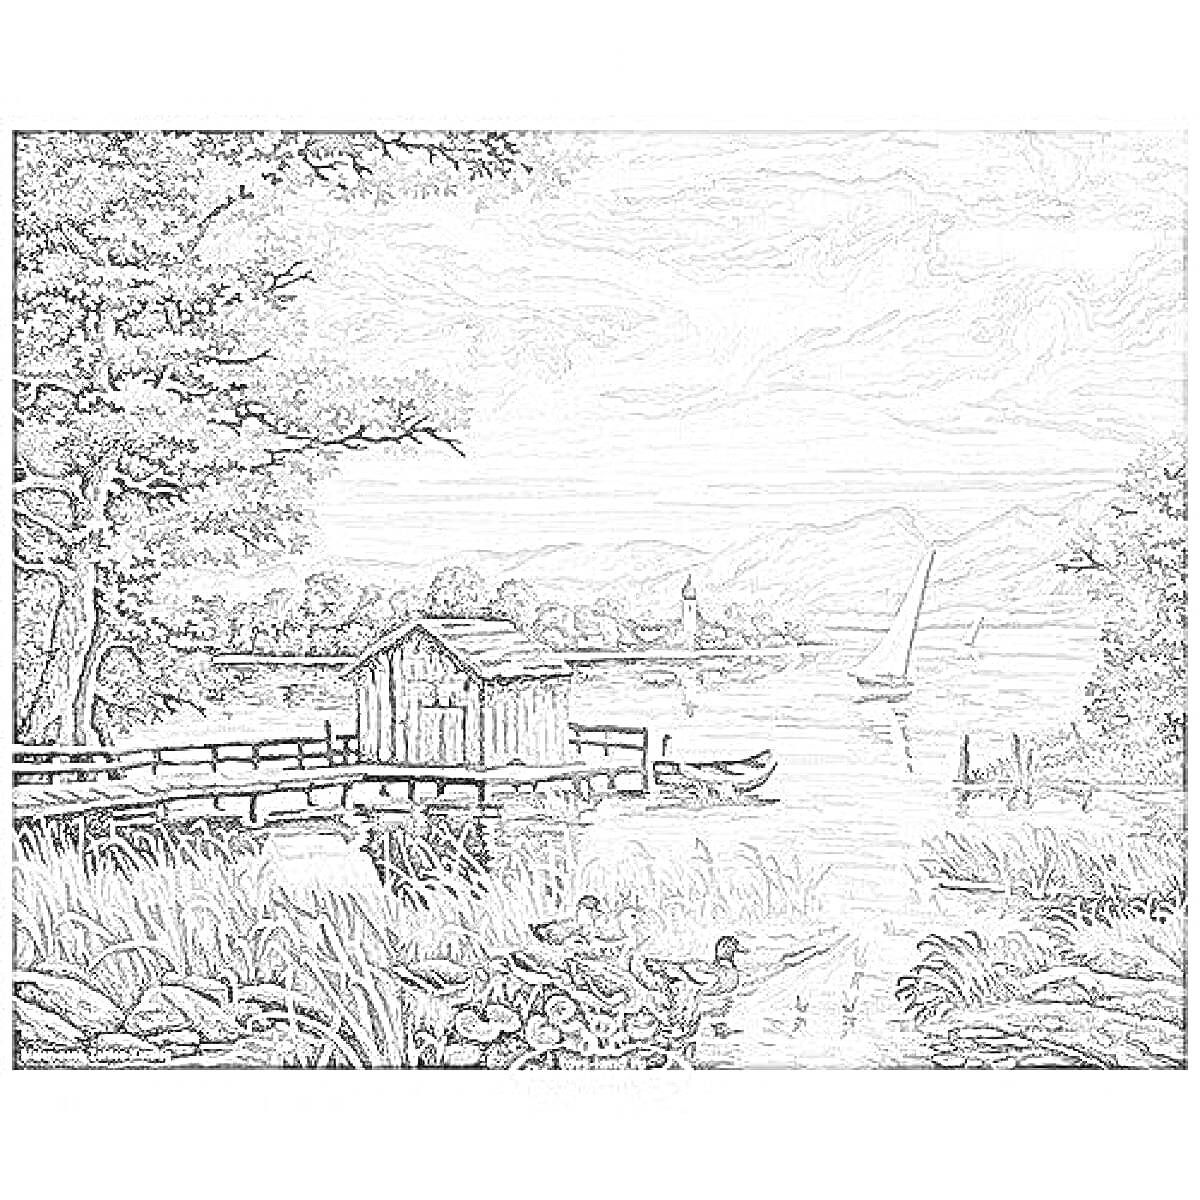 Раскраска Пейзаж у озера с лодкой, утками и домиком на берегу